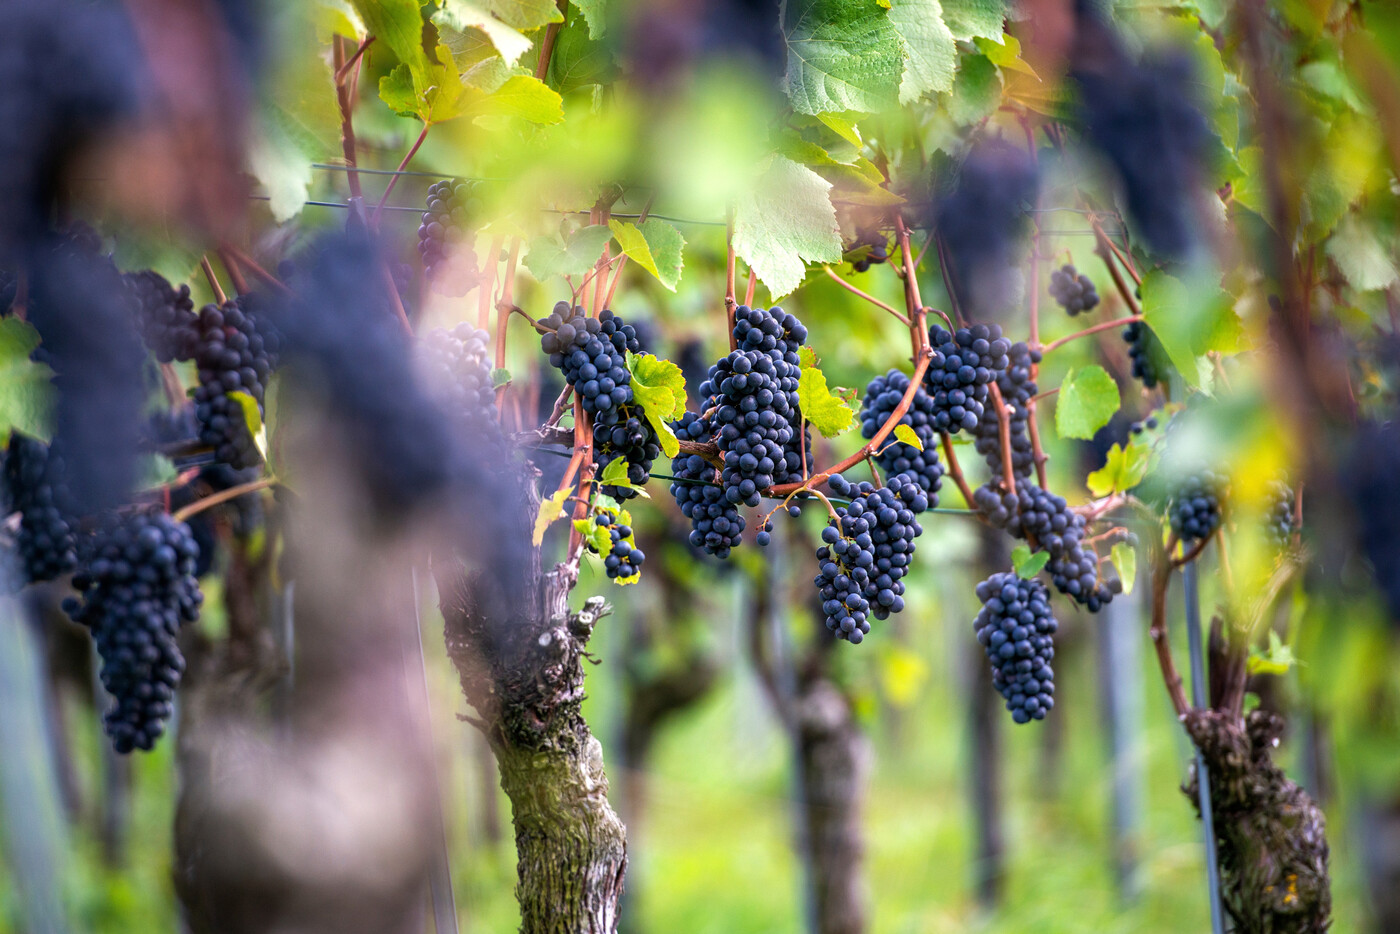 Die Weintraube: Bodenbeschaffenheit, Klima und Topografie spielen für die Weinernte eine wichtige Rolle. Ein weiterer Faktor ist das Wetter, welches ebenfalls grossen Einfluss auf einen guten Jahrgang hat.